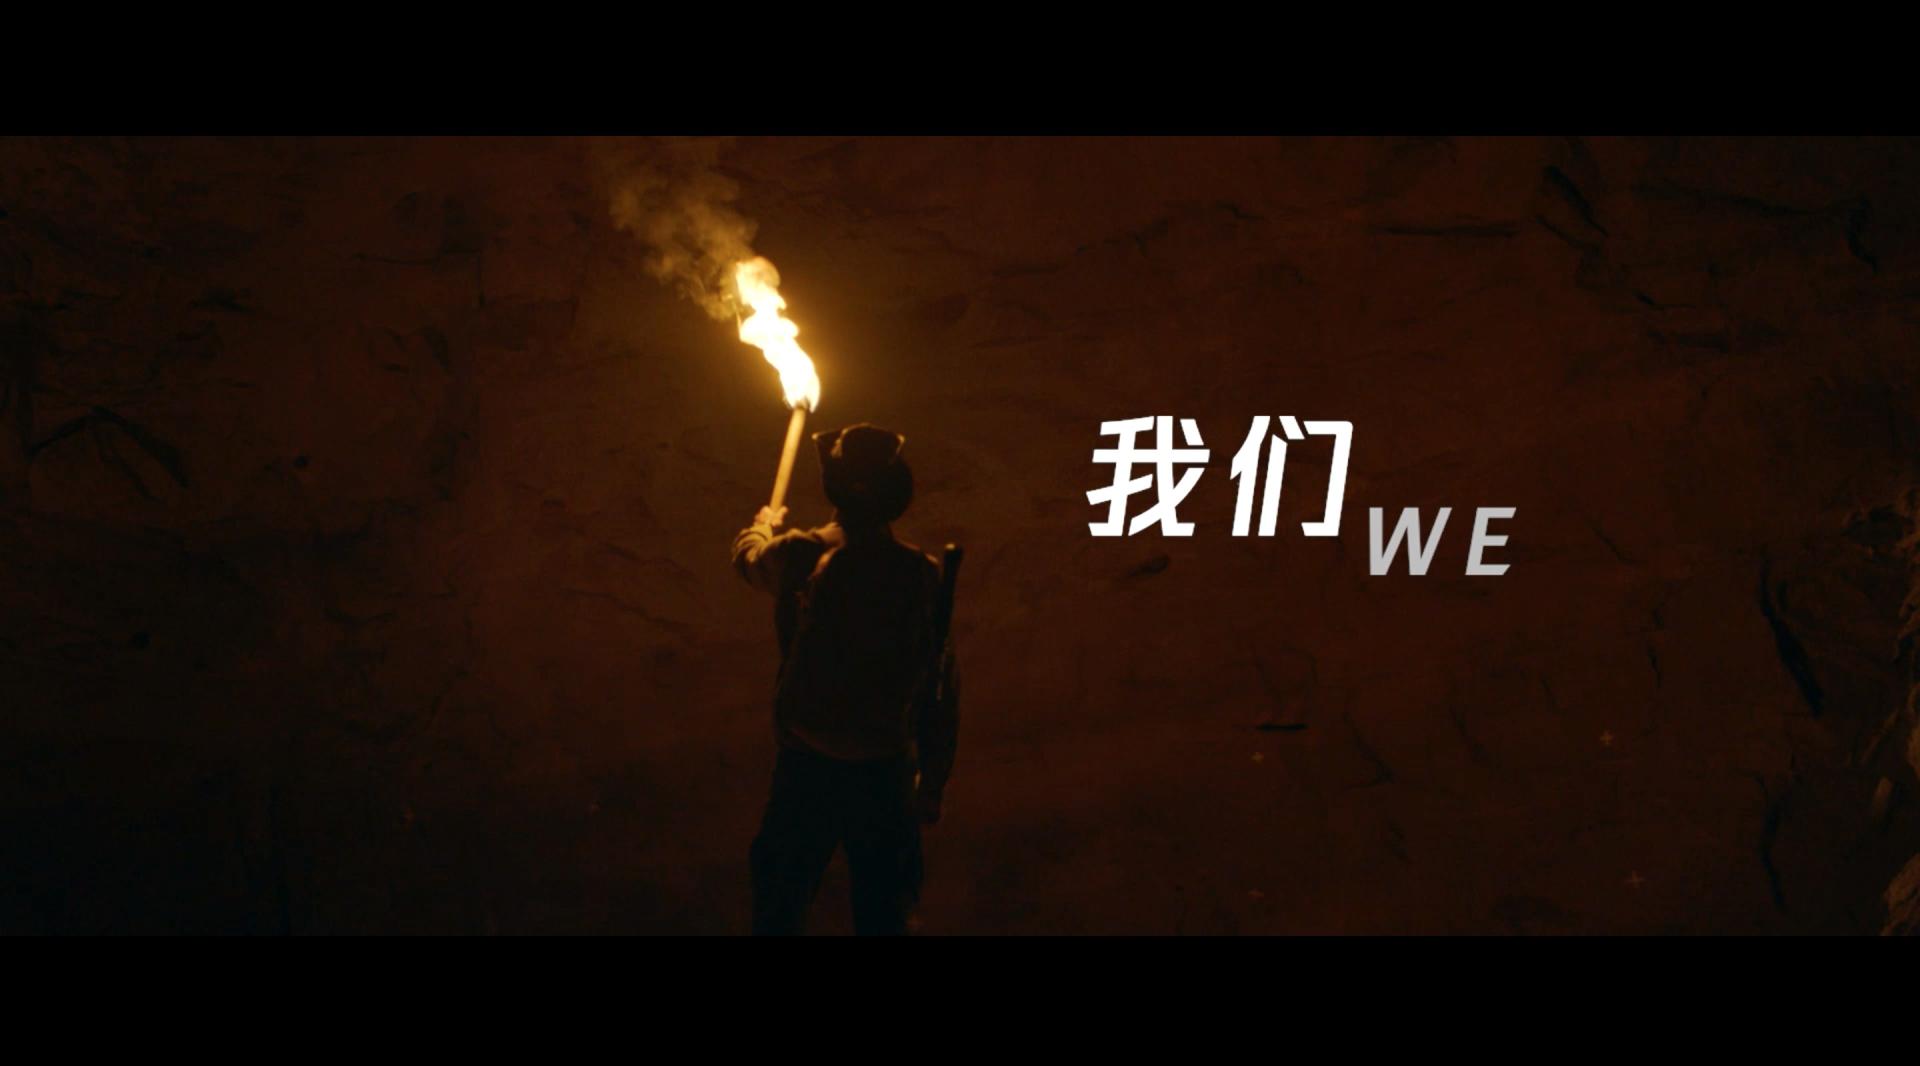 腾讯集团宣传片《我们》